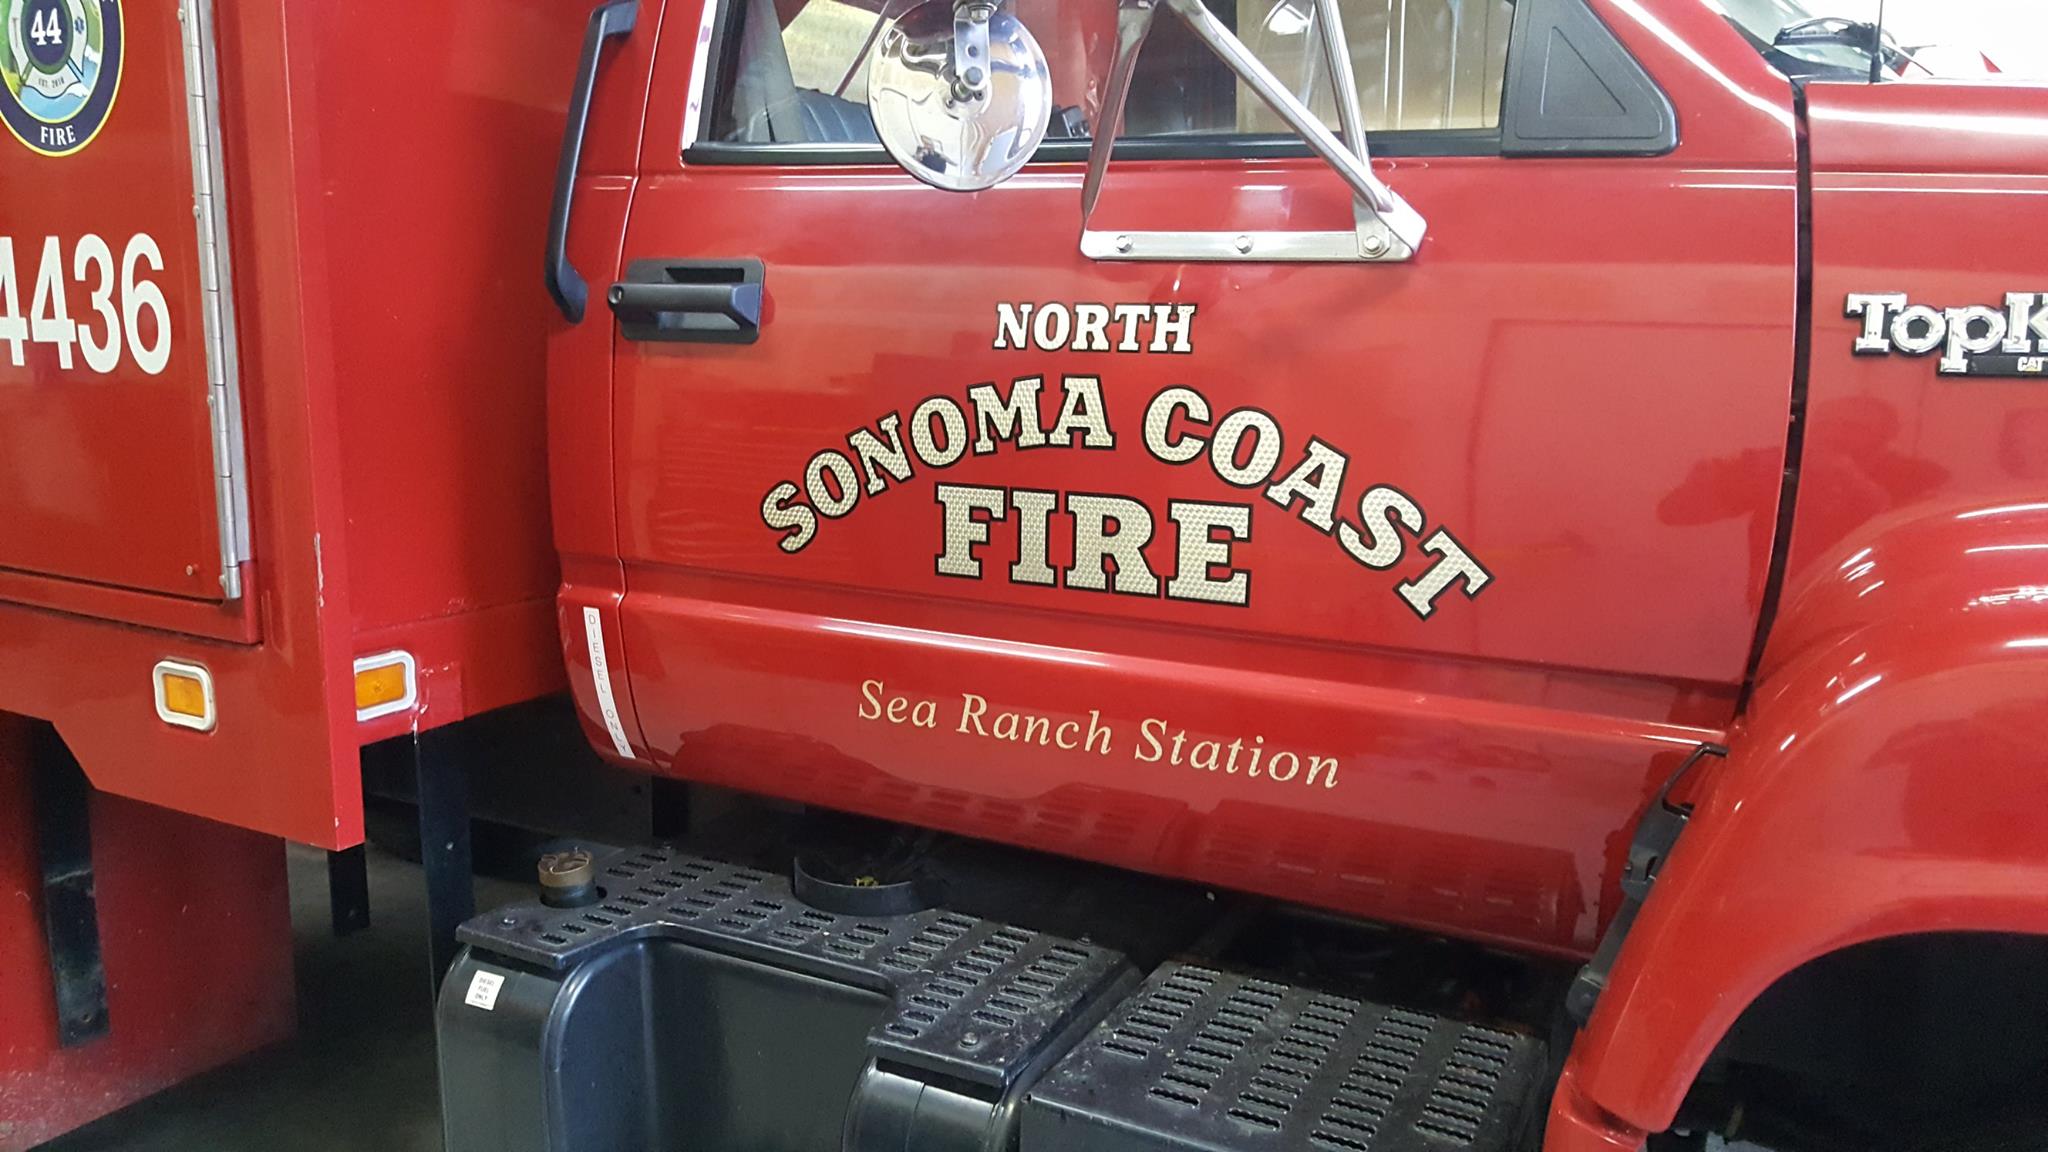 North Sonoma Coast Fire truck decal